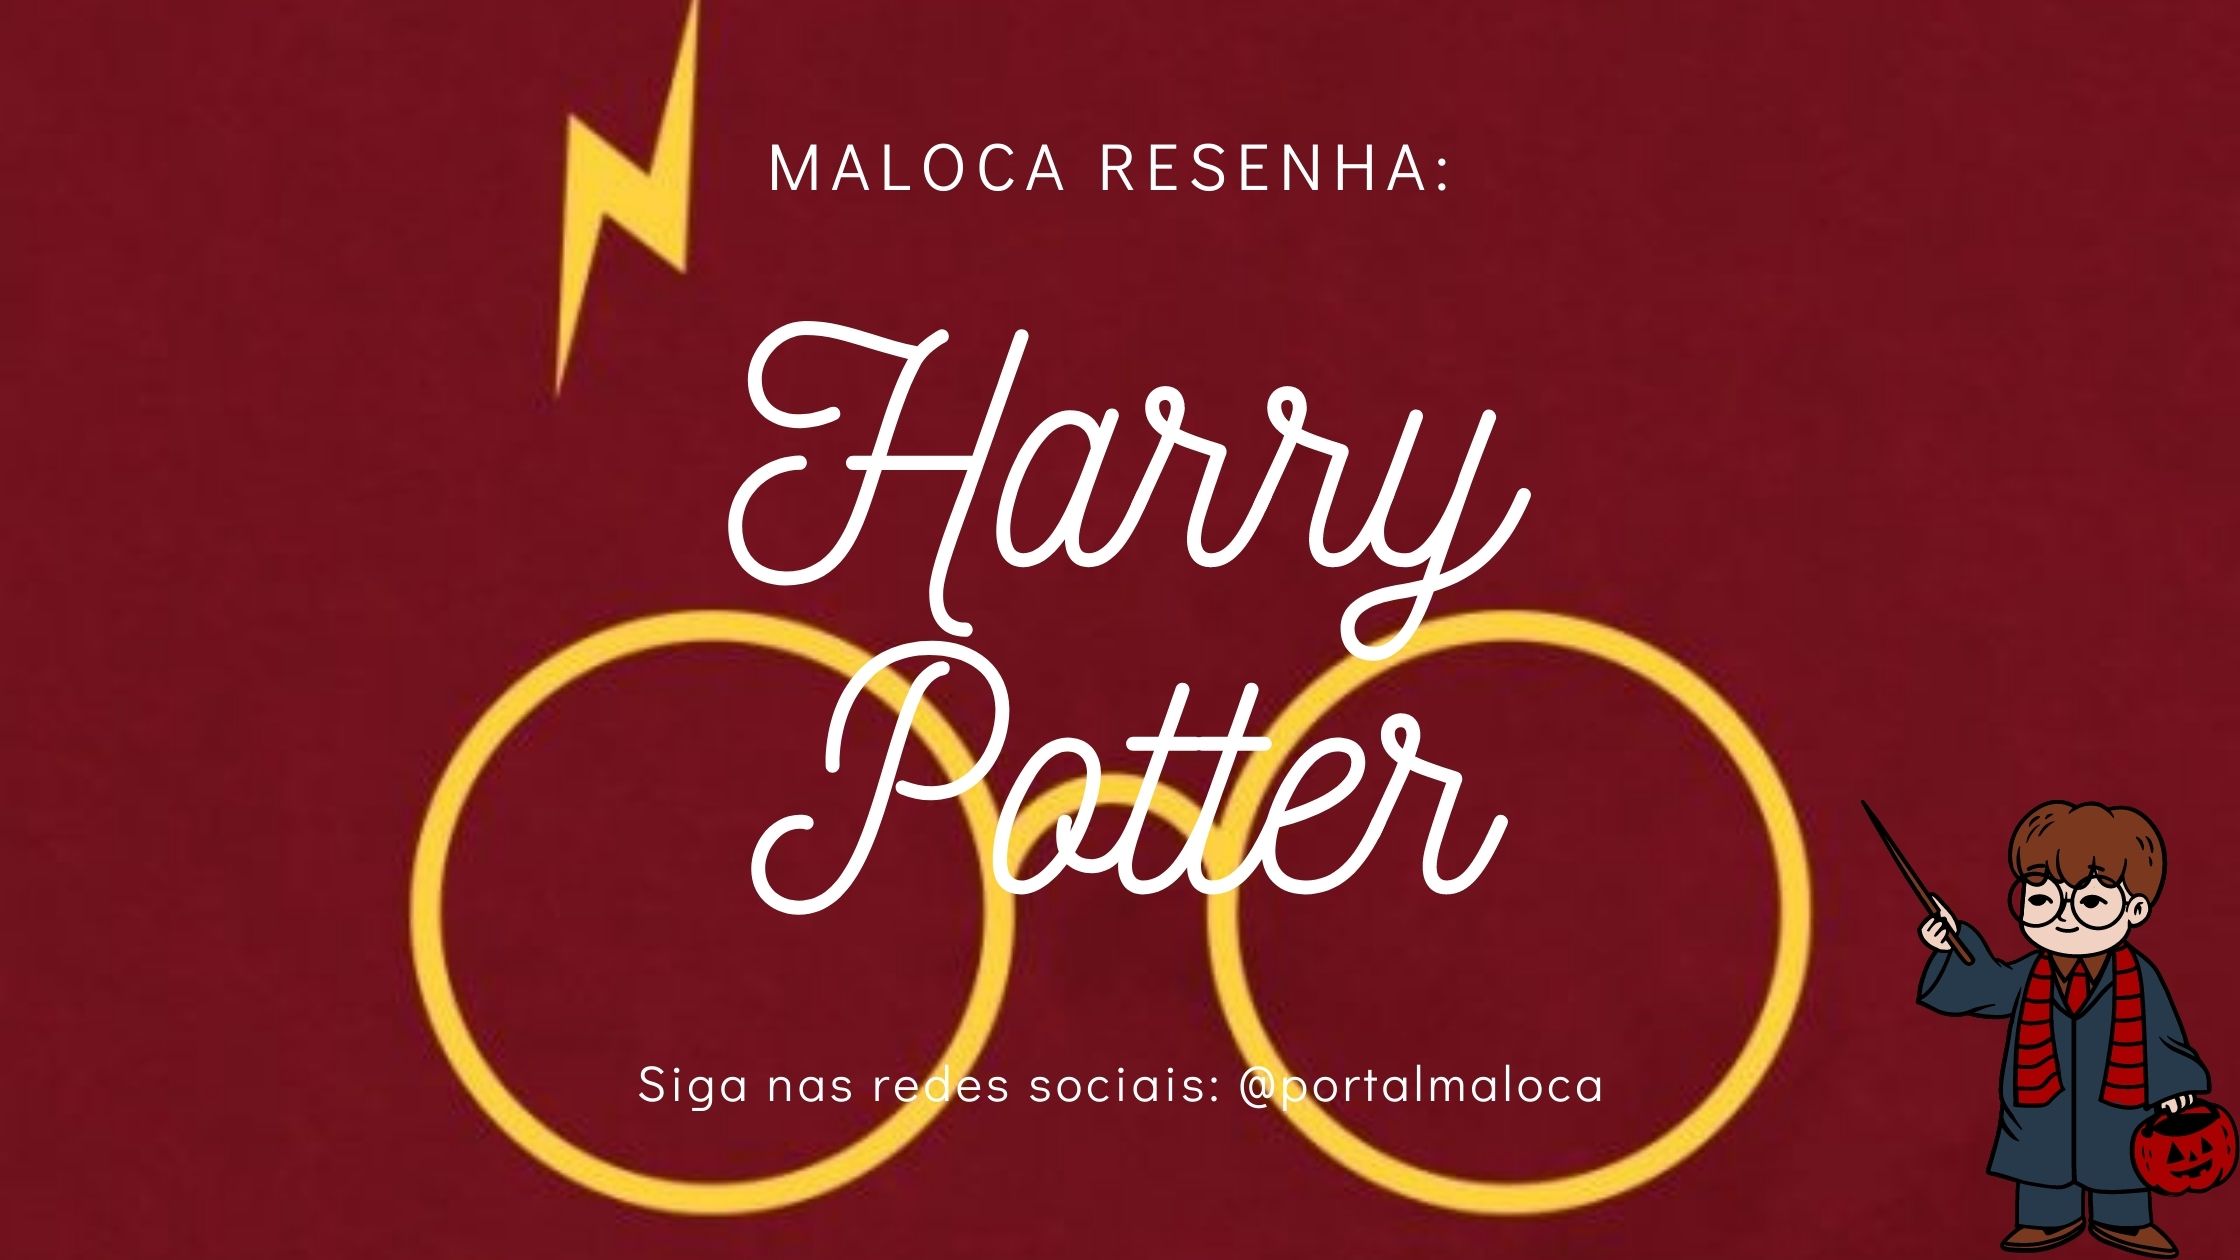 Maloca Resenha faz uma análise do universo de Harry Potter